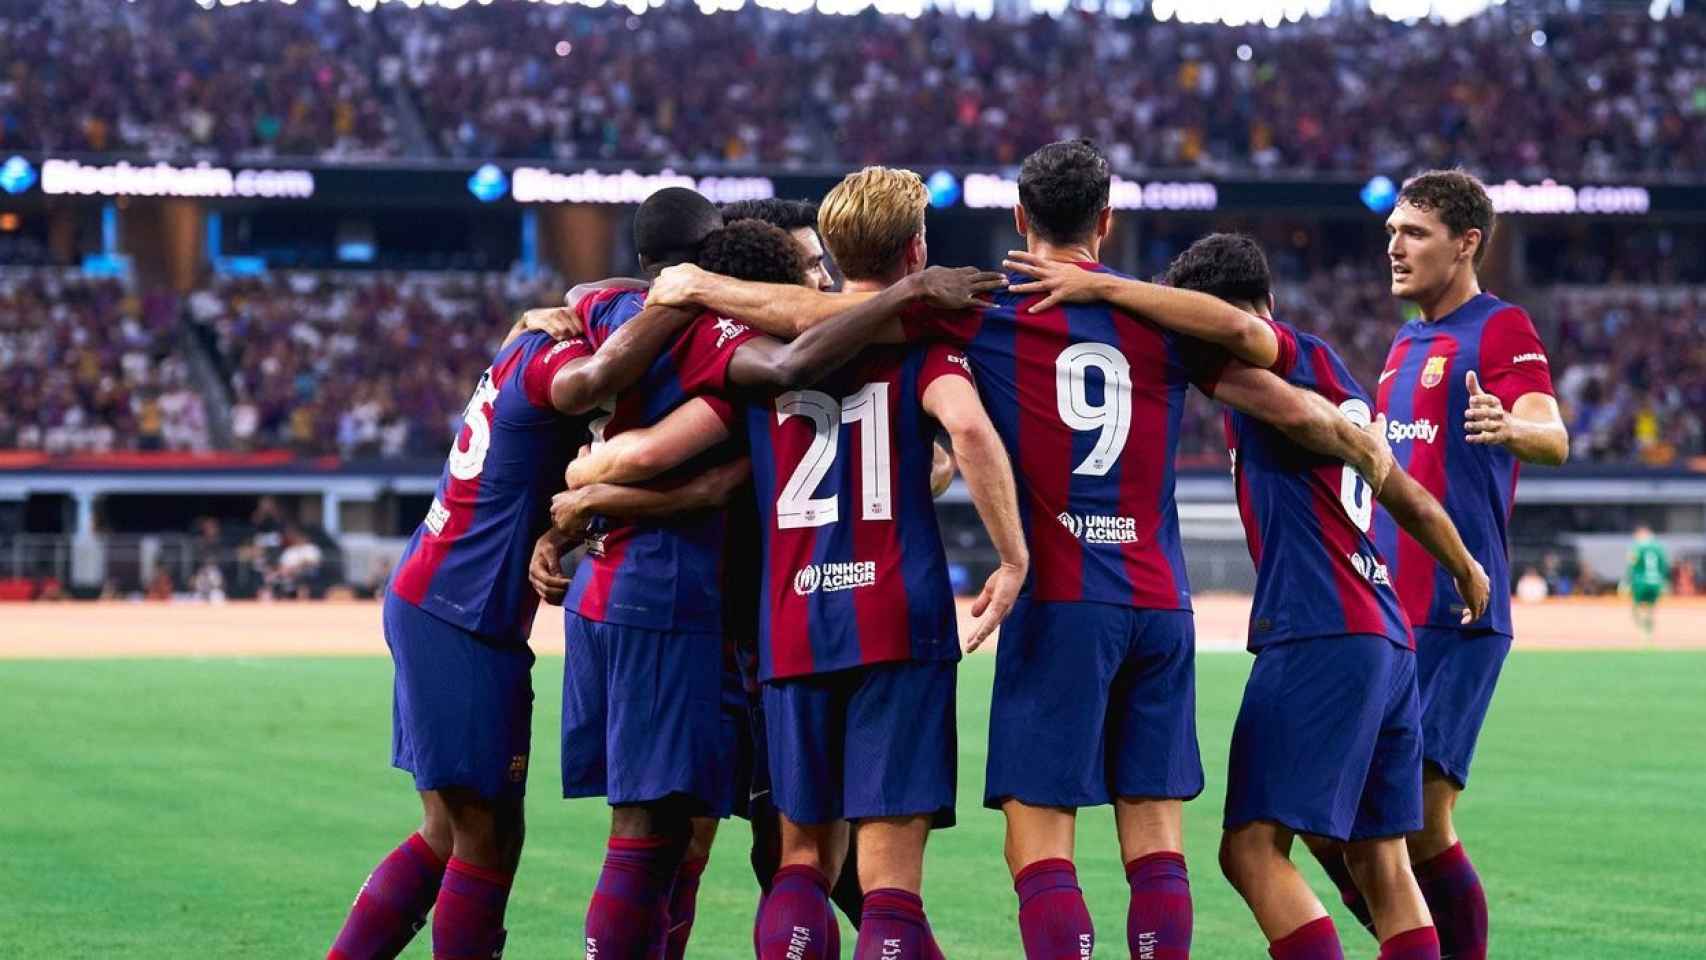 Los jugadores del FC Barcelona celebran un gol durante un partido de la pretemporada